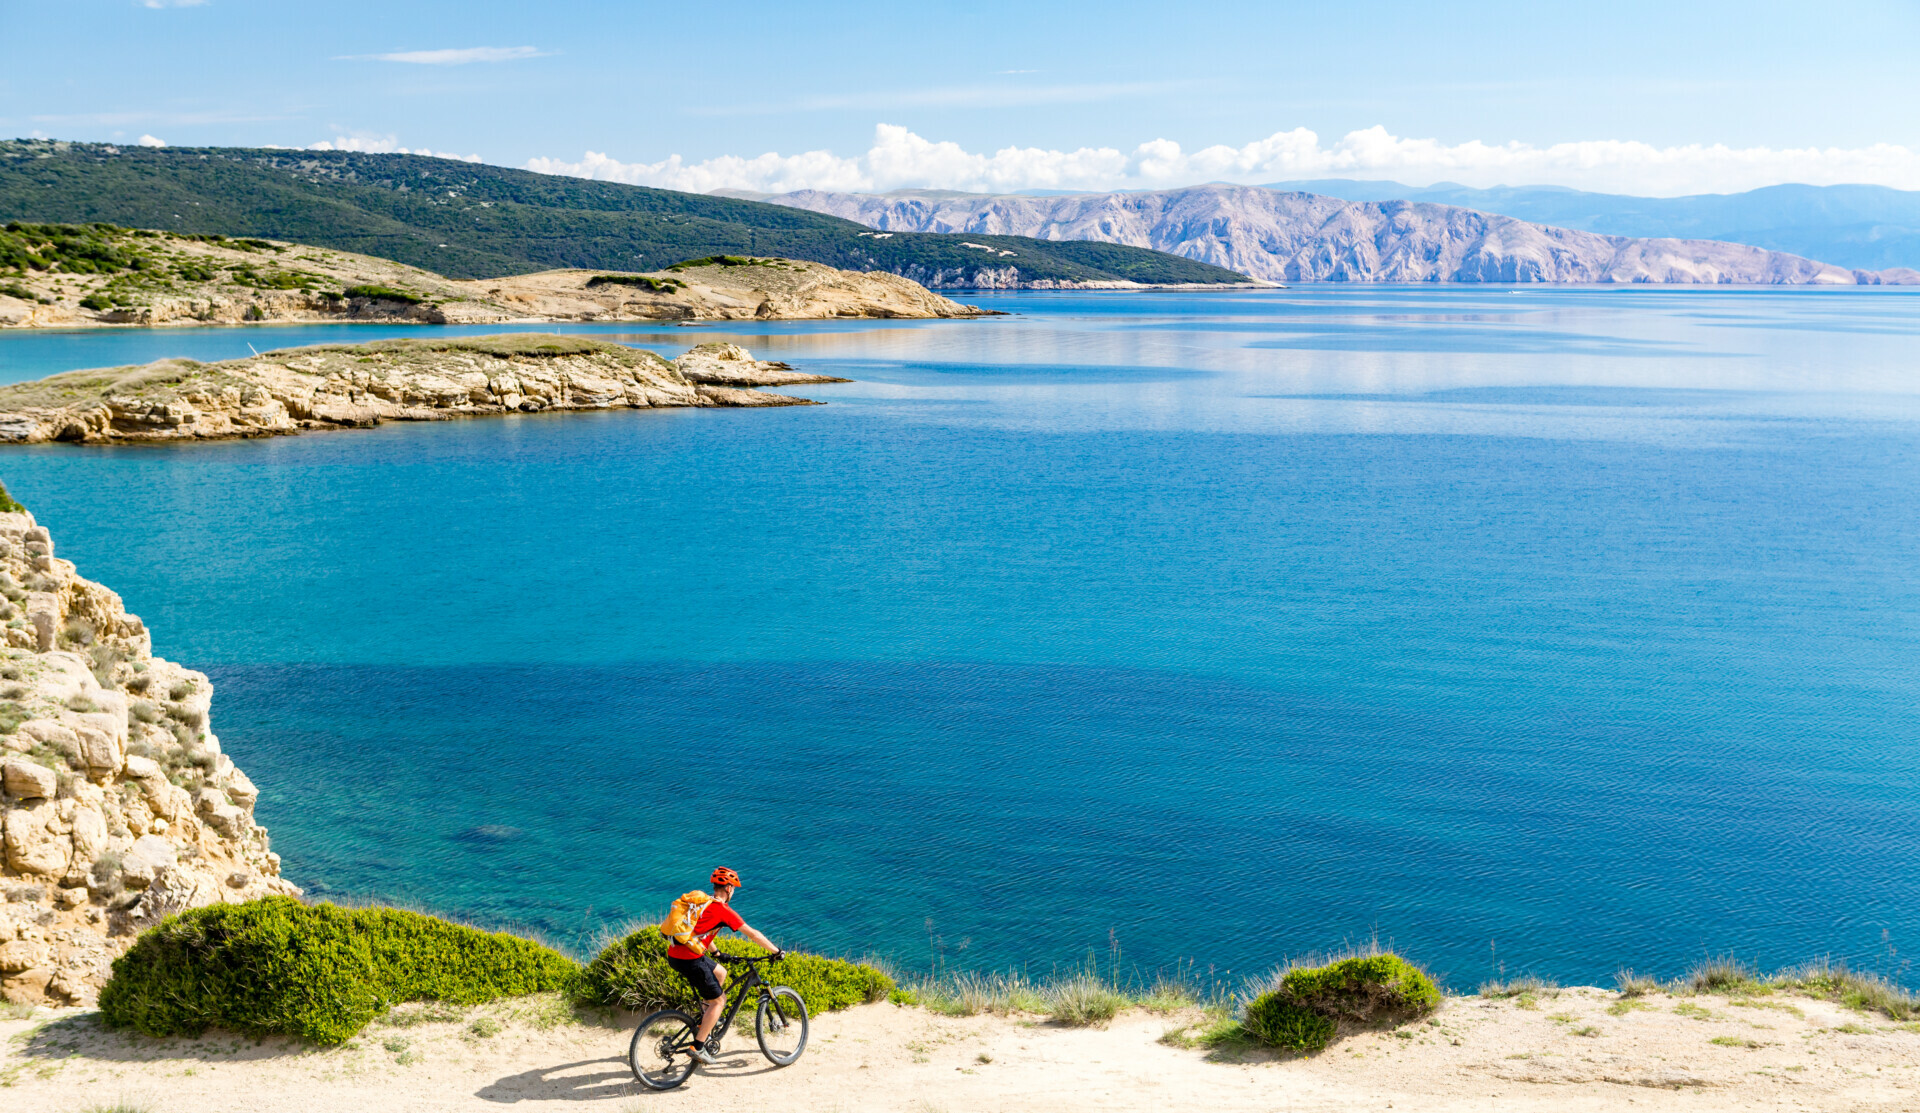 Ein Radfahrer in leuchtender Sportkleidung fährt auf einem sandigen Weg entlang der malerischen Küstenlinie, mit klarem blauem Meerwasser und einer bergigen Landschaft im Hintergrund.